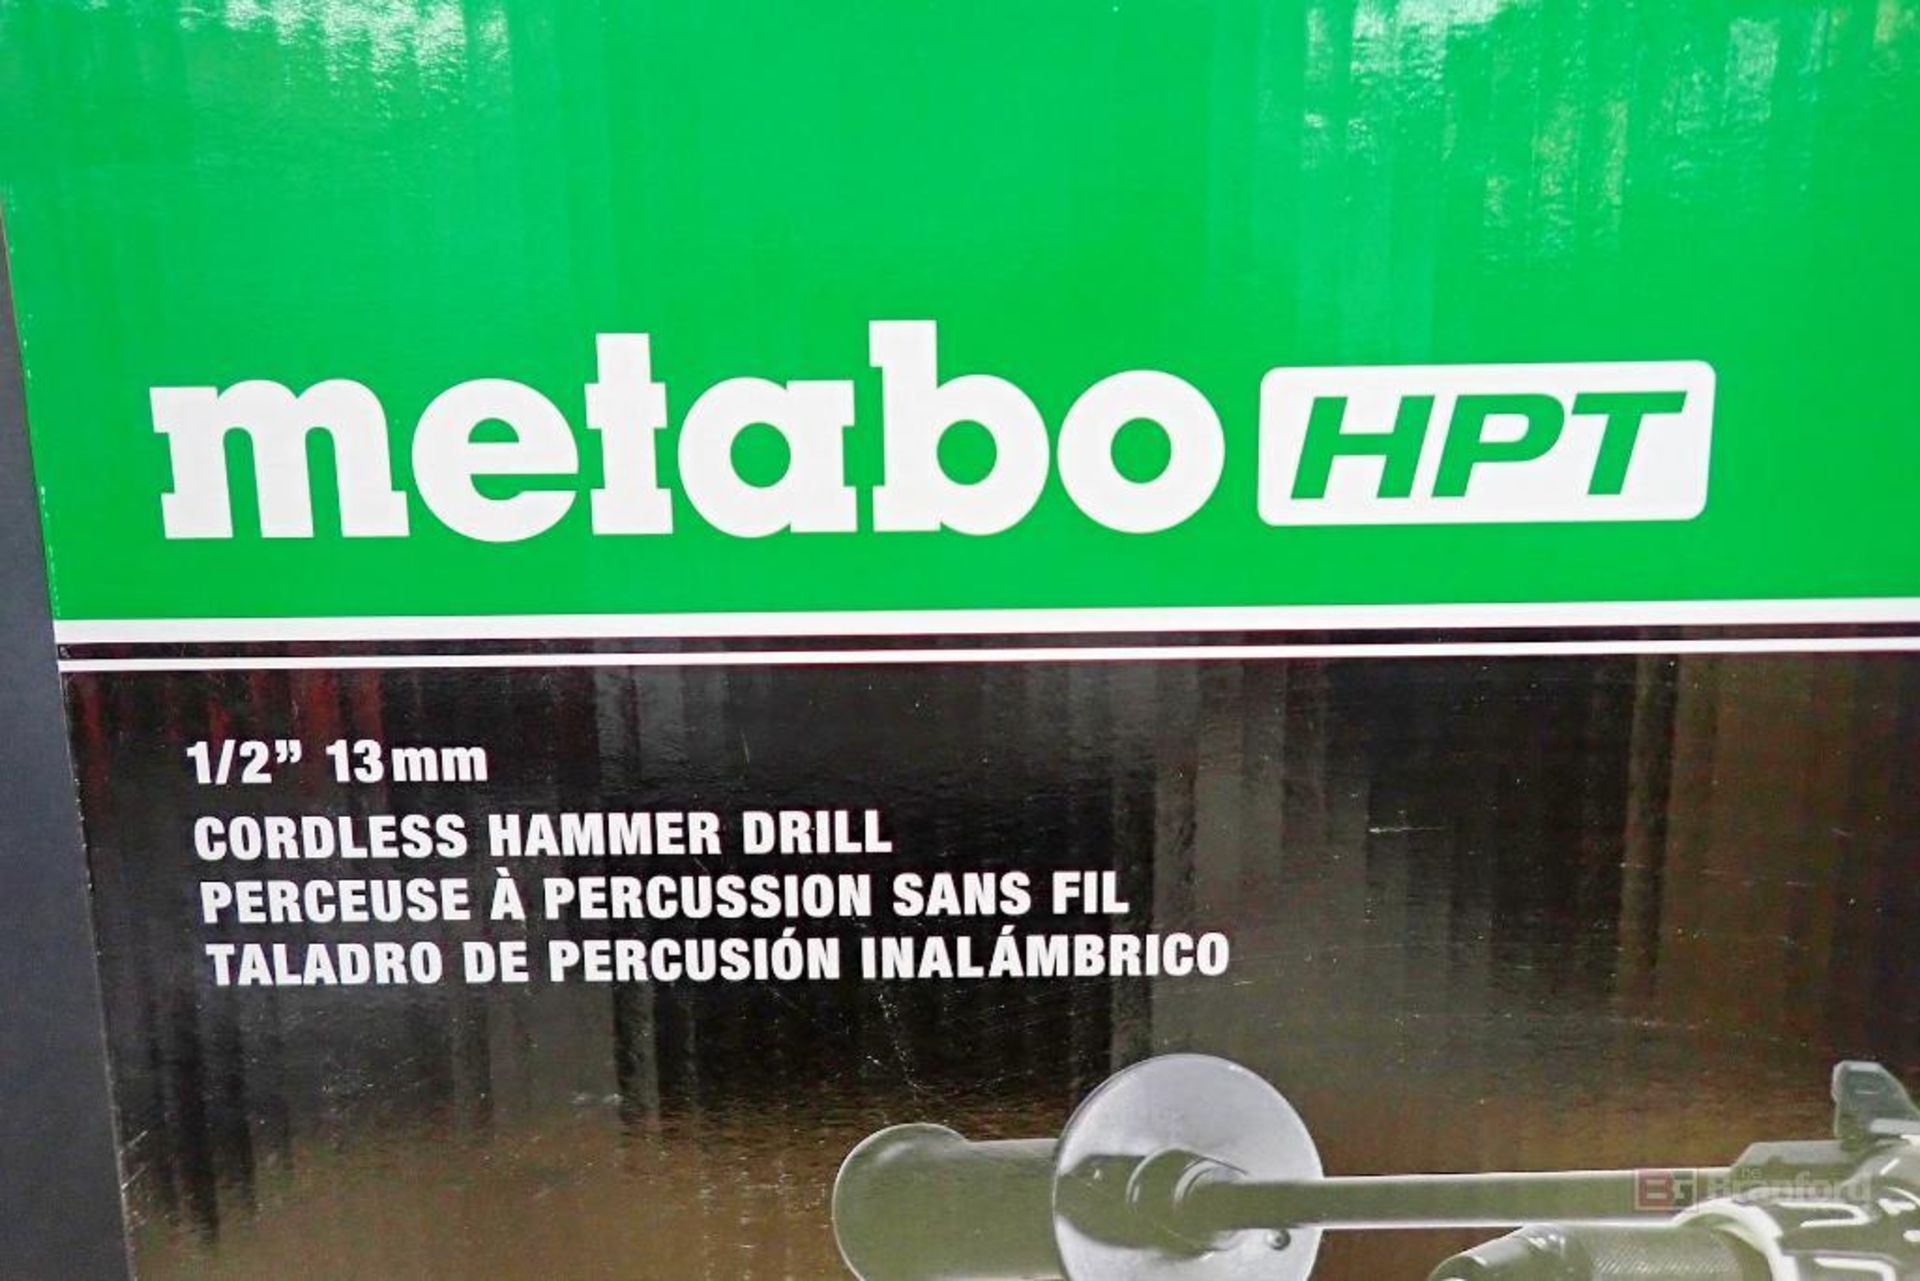 Metabo HPT DV36DA MultiVolt Brushless RFC 1/2" 13mm Cordless Hammer Drill - Image 3 of 12